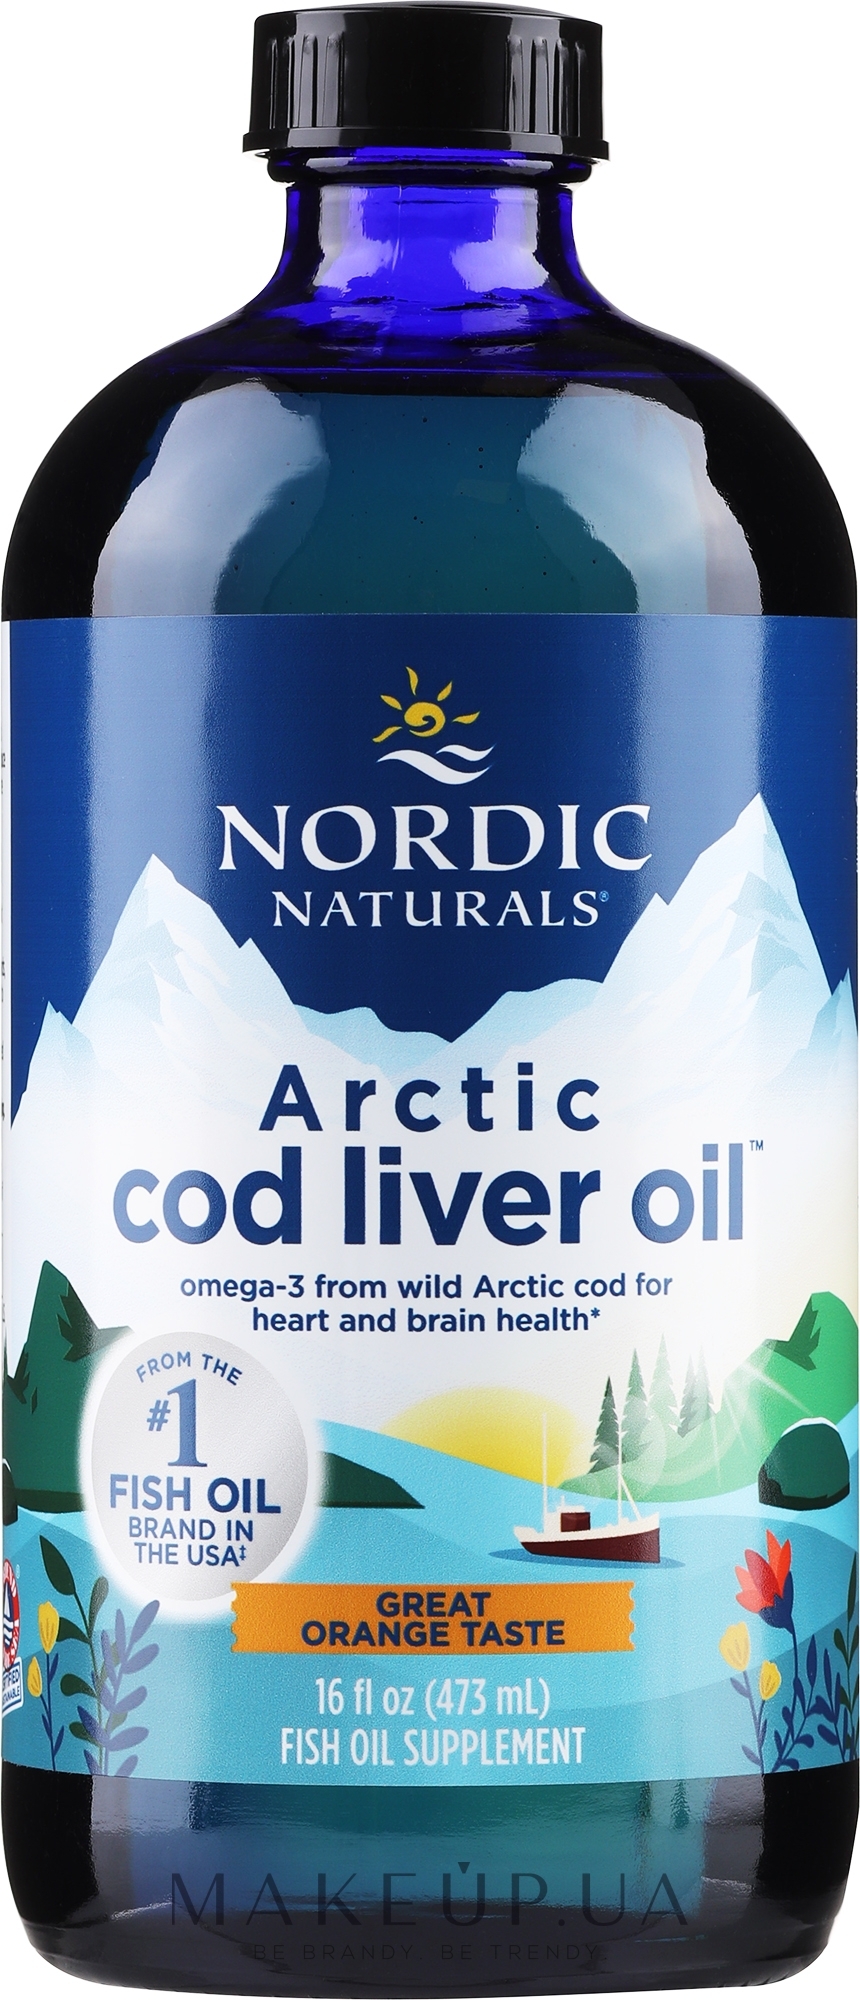 Пищевая добавка с апельсиновым вкусом 1060 mg "Омега-3" - Nordic Naturals Arctic Cod Liver Oil  — фото 473ml